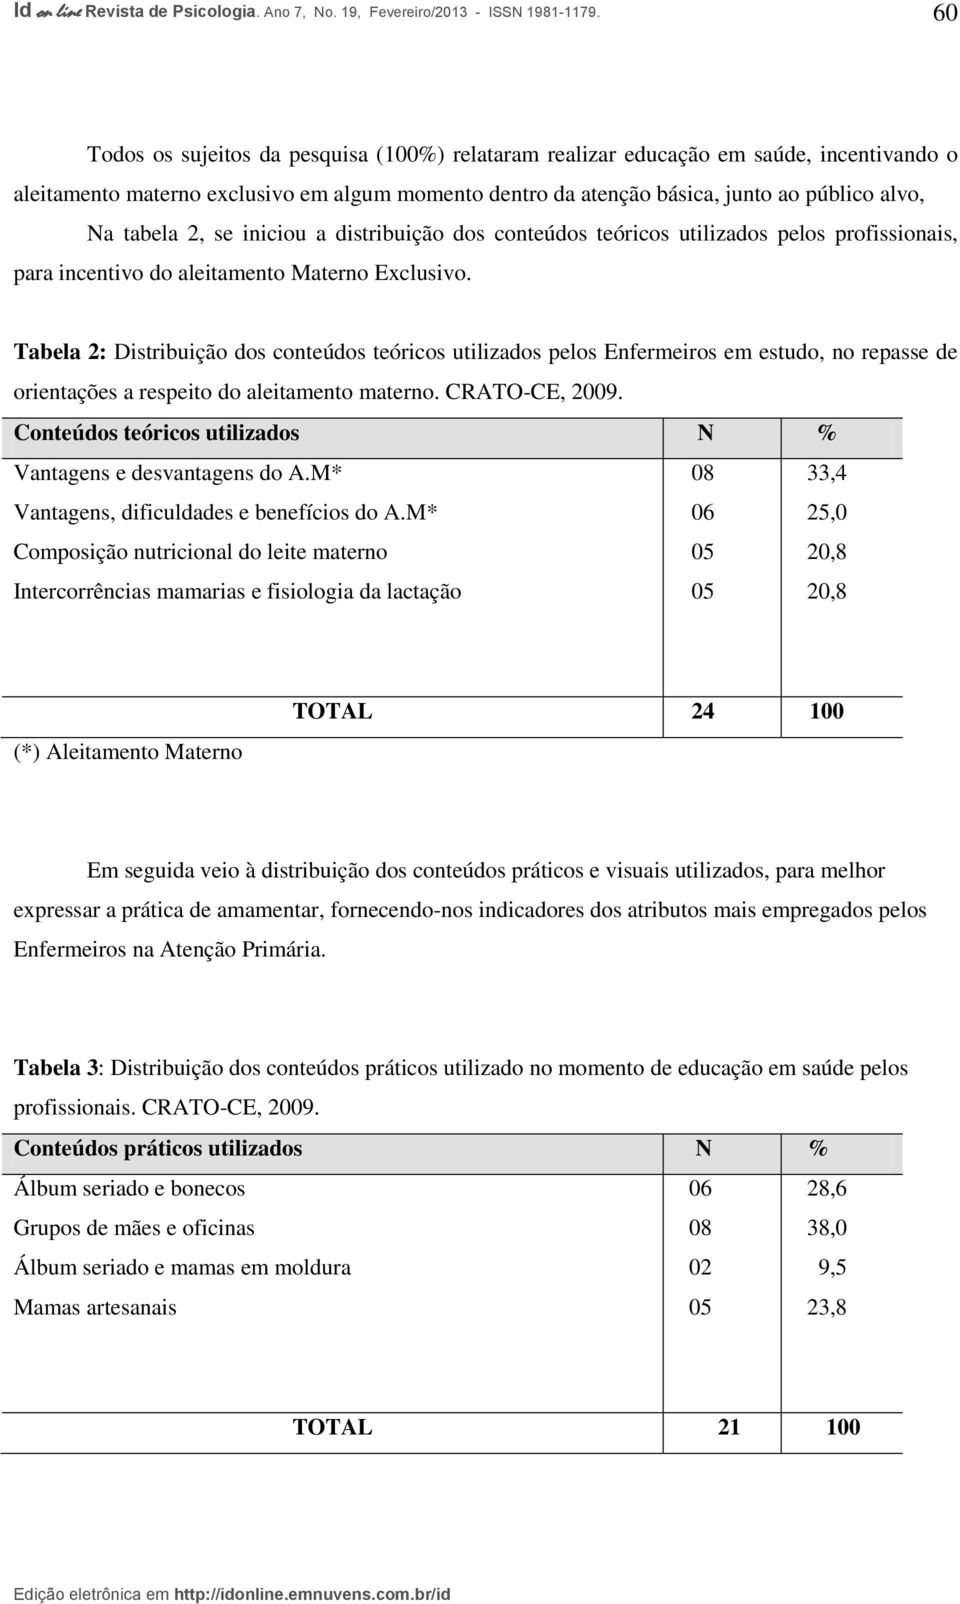 Tabela 2: Distribuição dos conteúdos teóricos utilizados pelos Enfermeiros em estudo, no repasse de orientações a respeito do aleitamento materno. CRATO-CE, 2009.